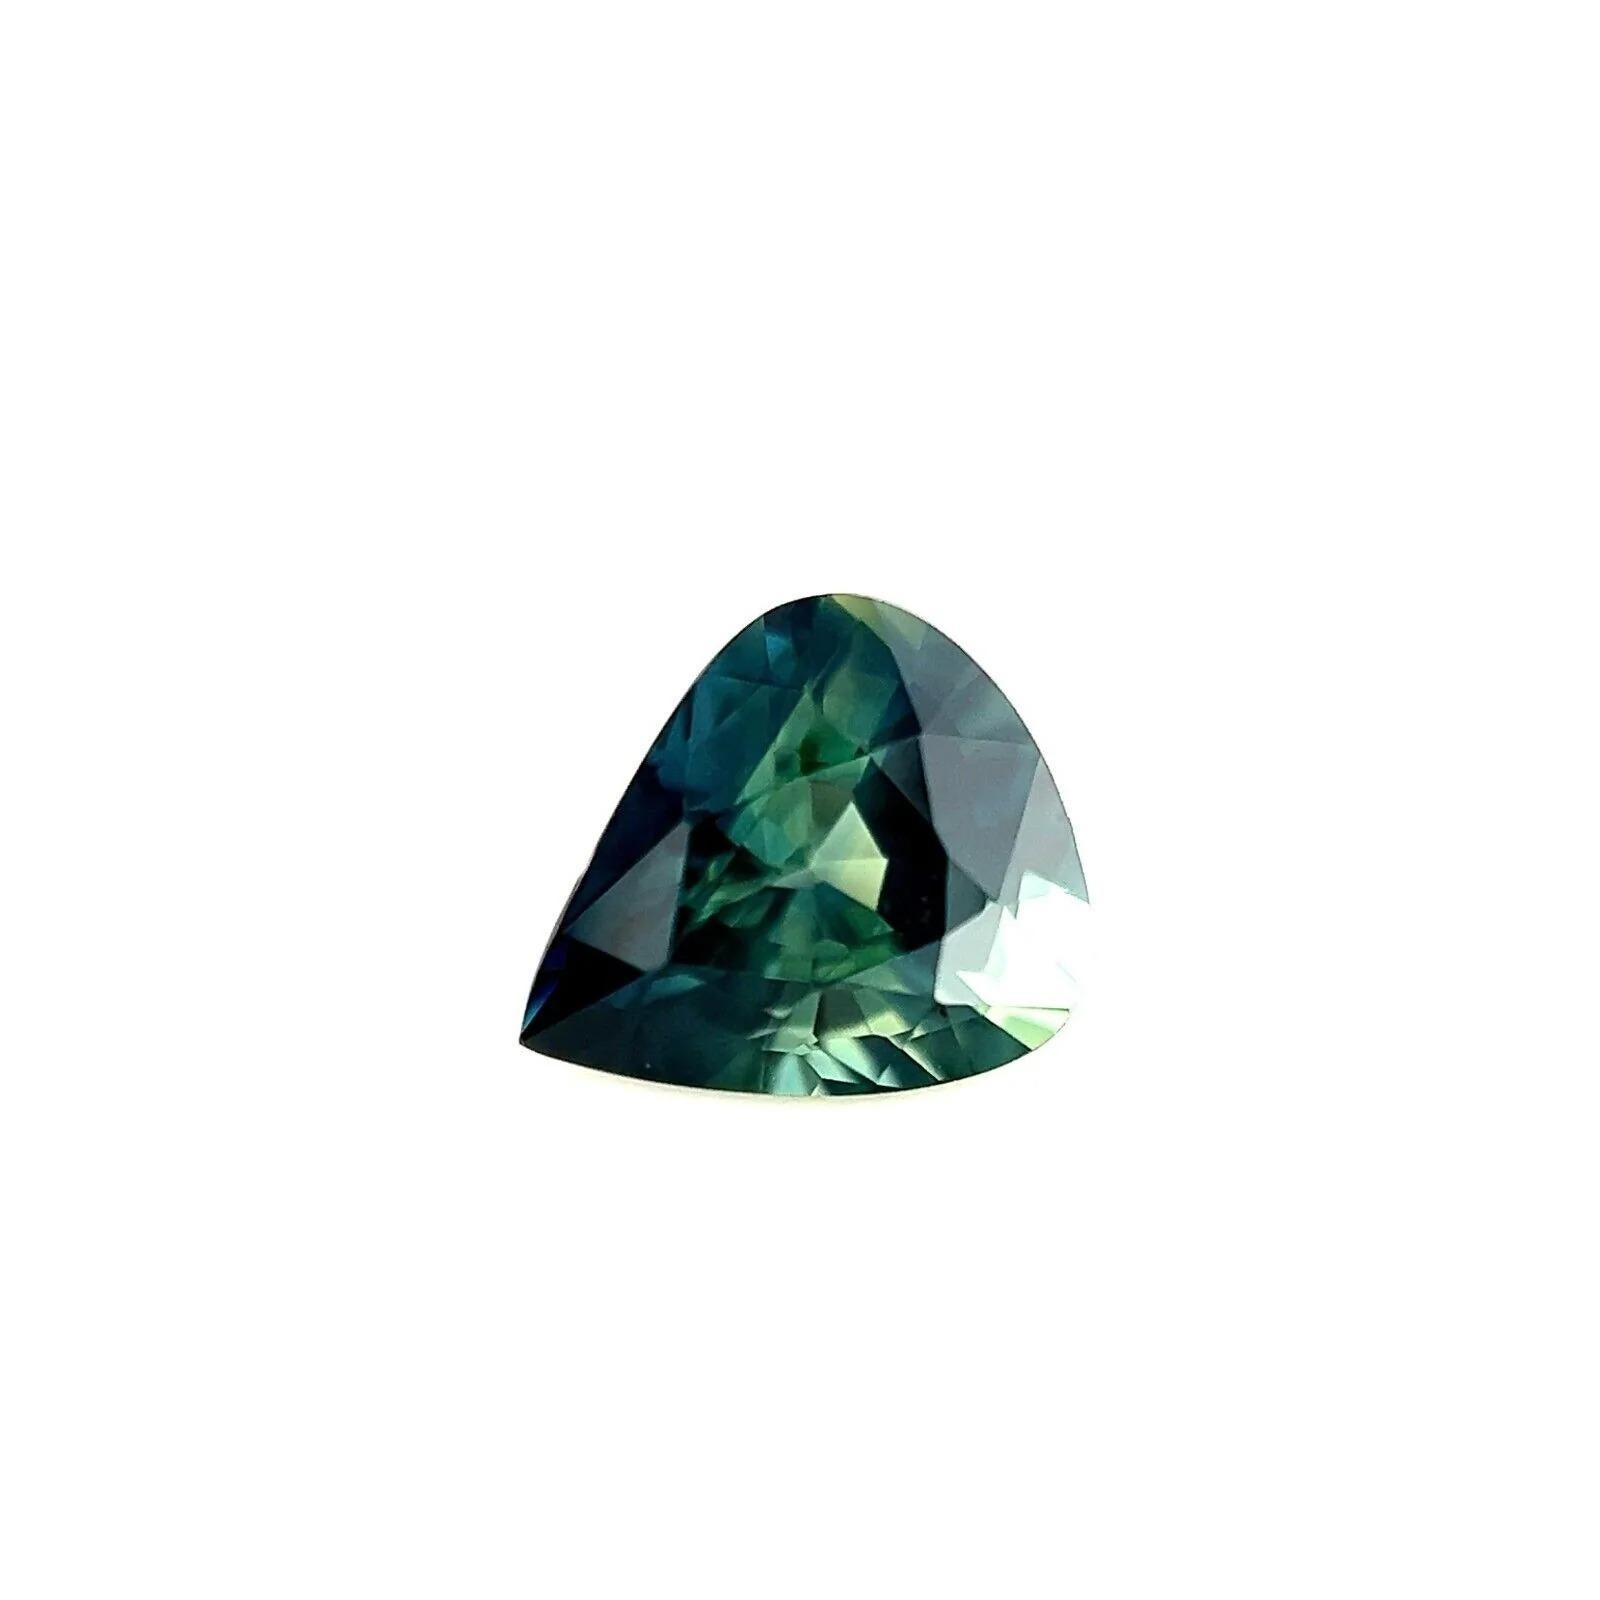 0.86ct Saphir australien de couleur Parti Sapphire vert bleu taille poire VVS Gem 6.2x5.4mm

Fine pierre précieuse saphir naturel australien de couleur partielle.
0.86 Carat avec une belle et unique couleur bleu parti vert. Une pierre unique et